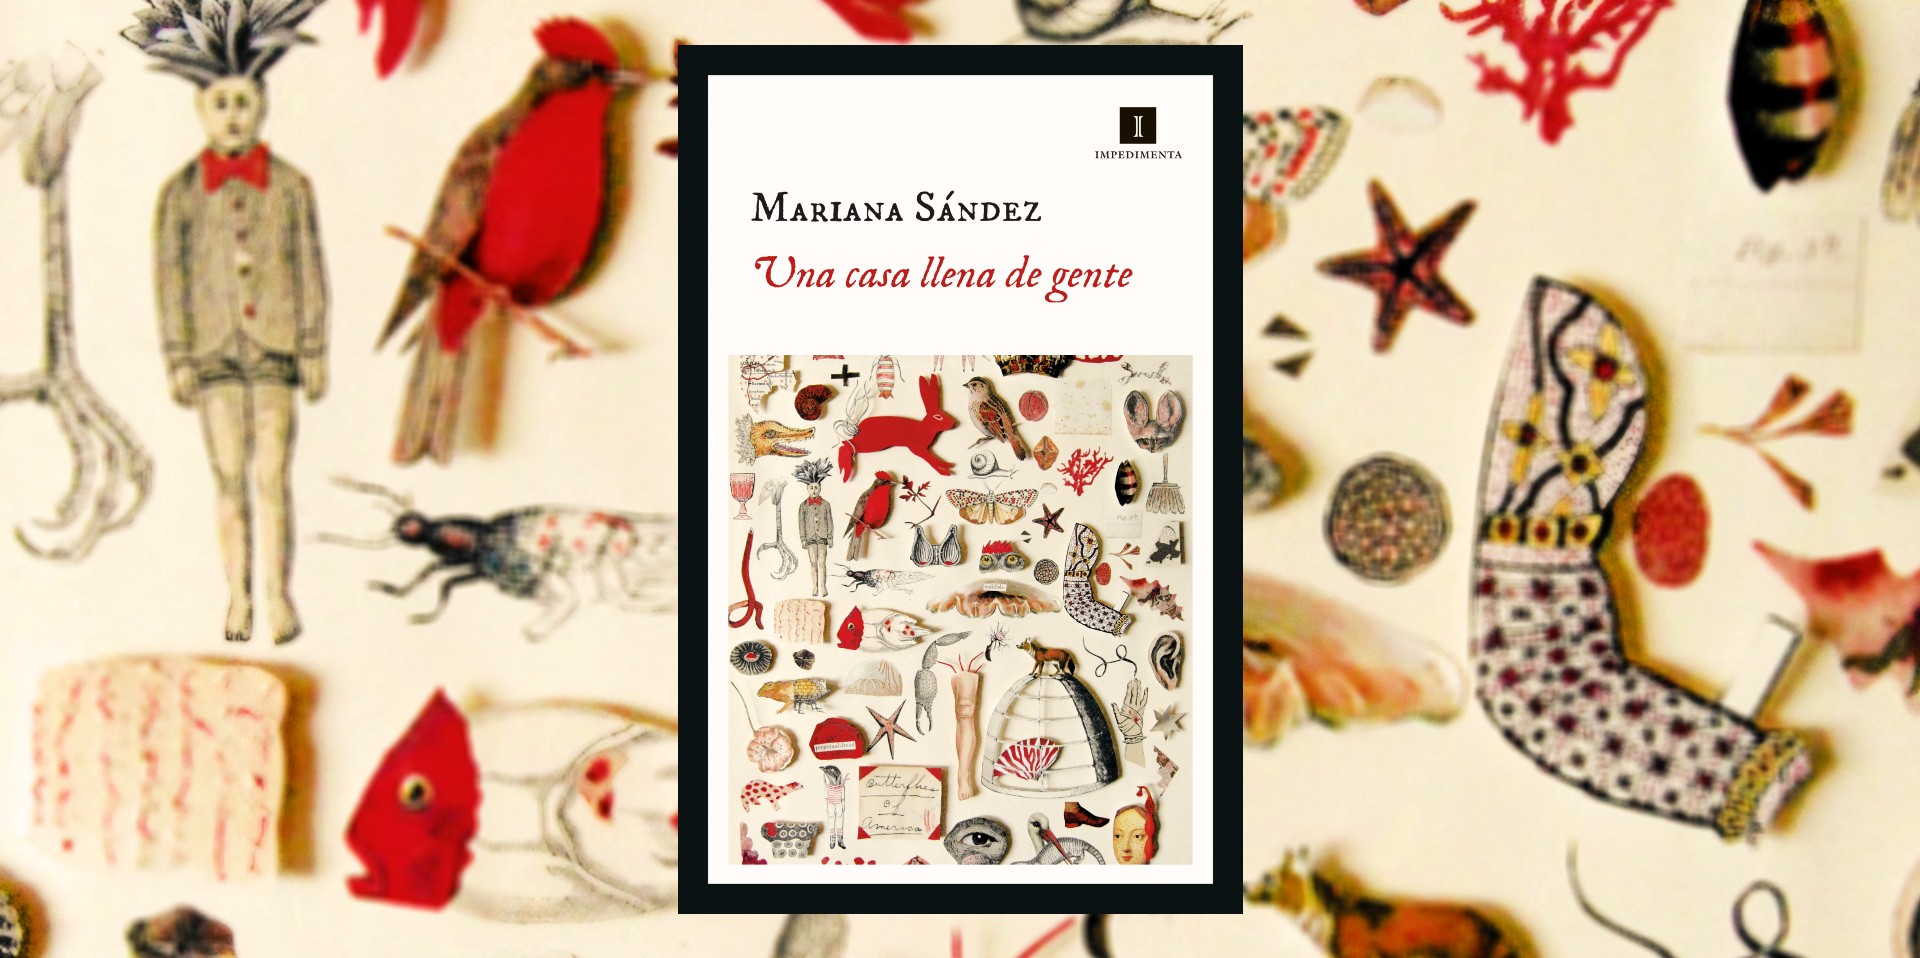 Libros, enigmas y un refugio para ocultarse: “Una casa llena de gente”, de Mariana Sández, ha sido reeditada en España